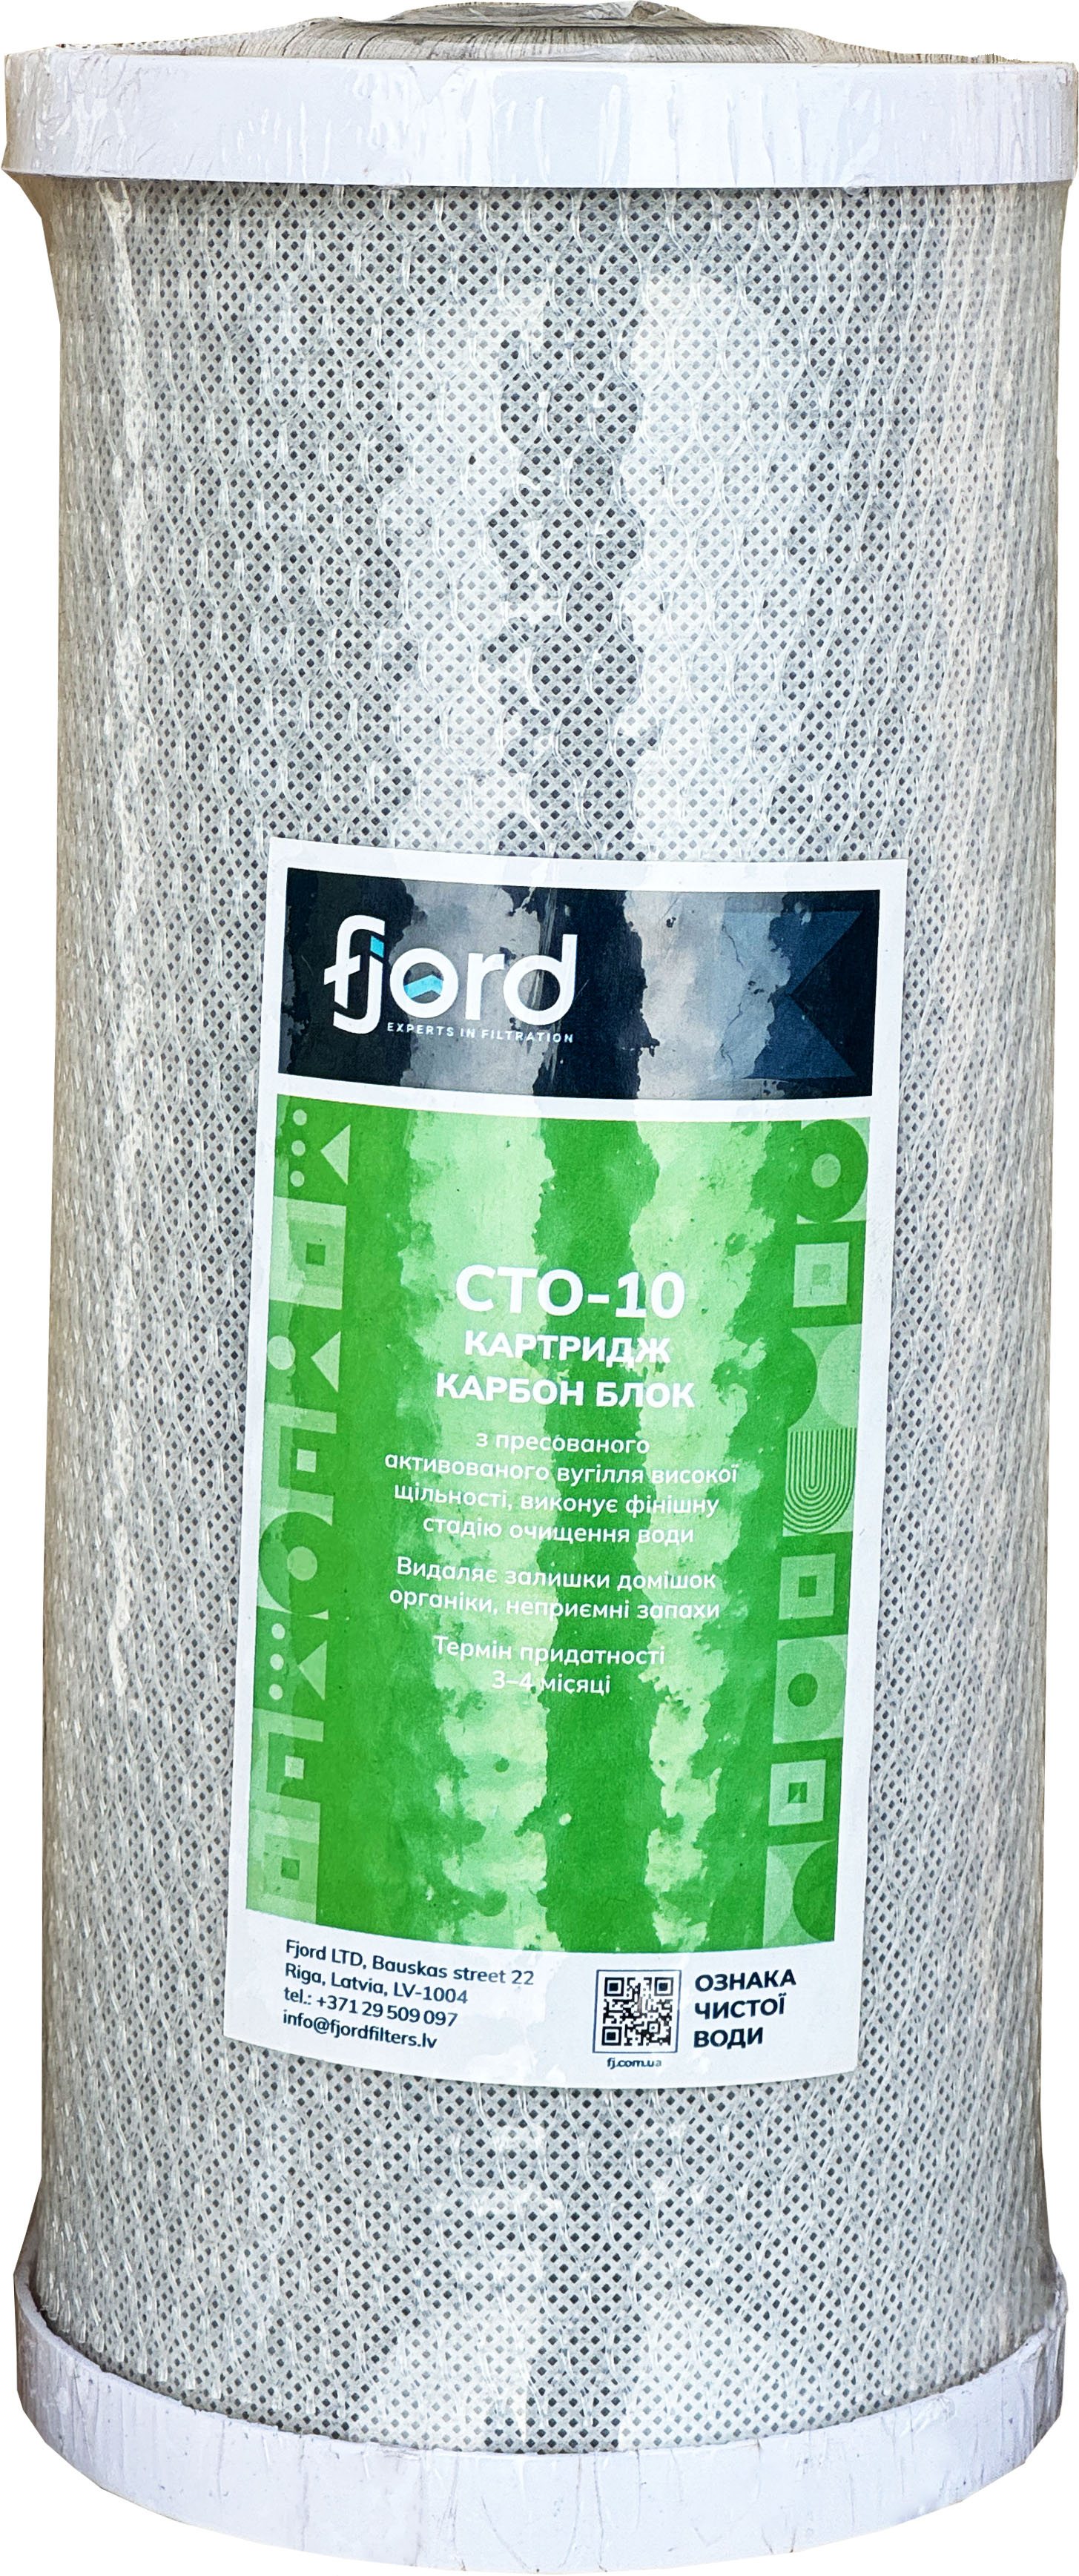 Инструкция картридж для фильтра Fjord CTO-BB10 (уголь)